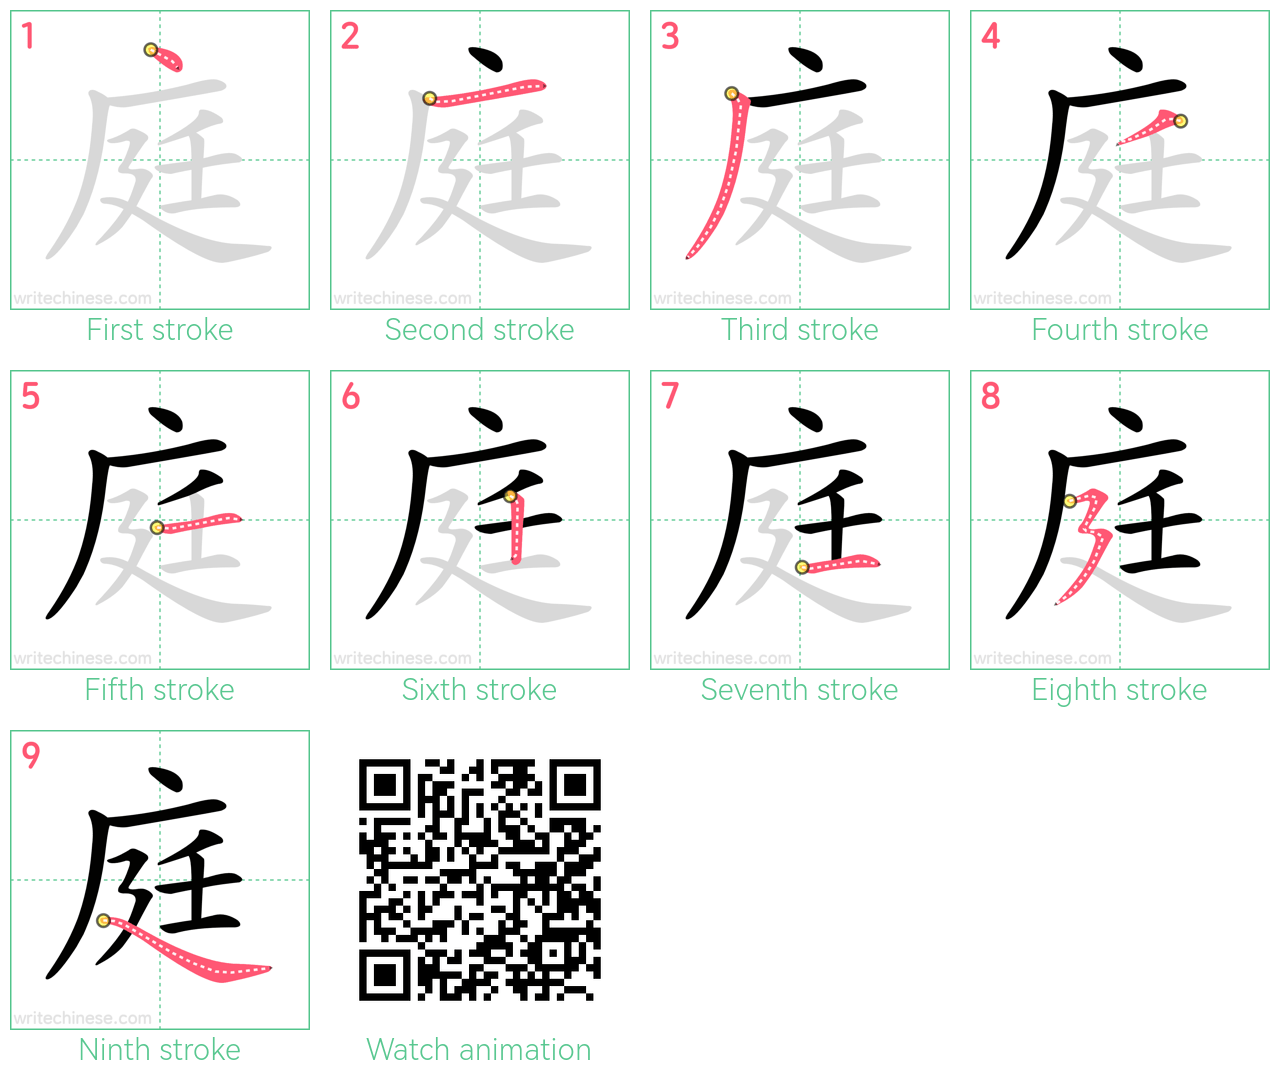 庭 step-by-step stroke order diagrams